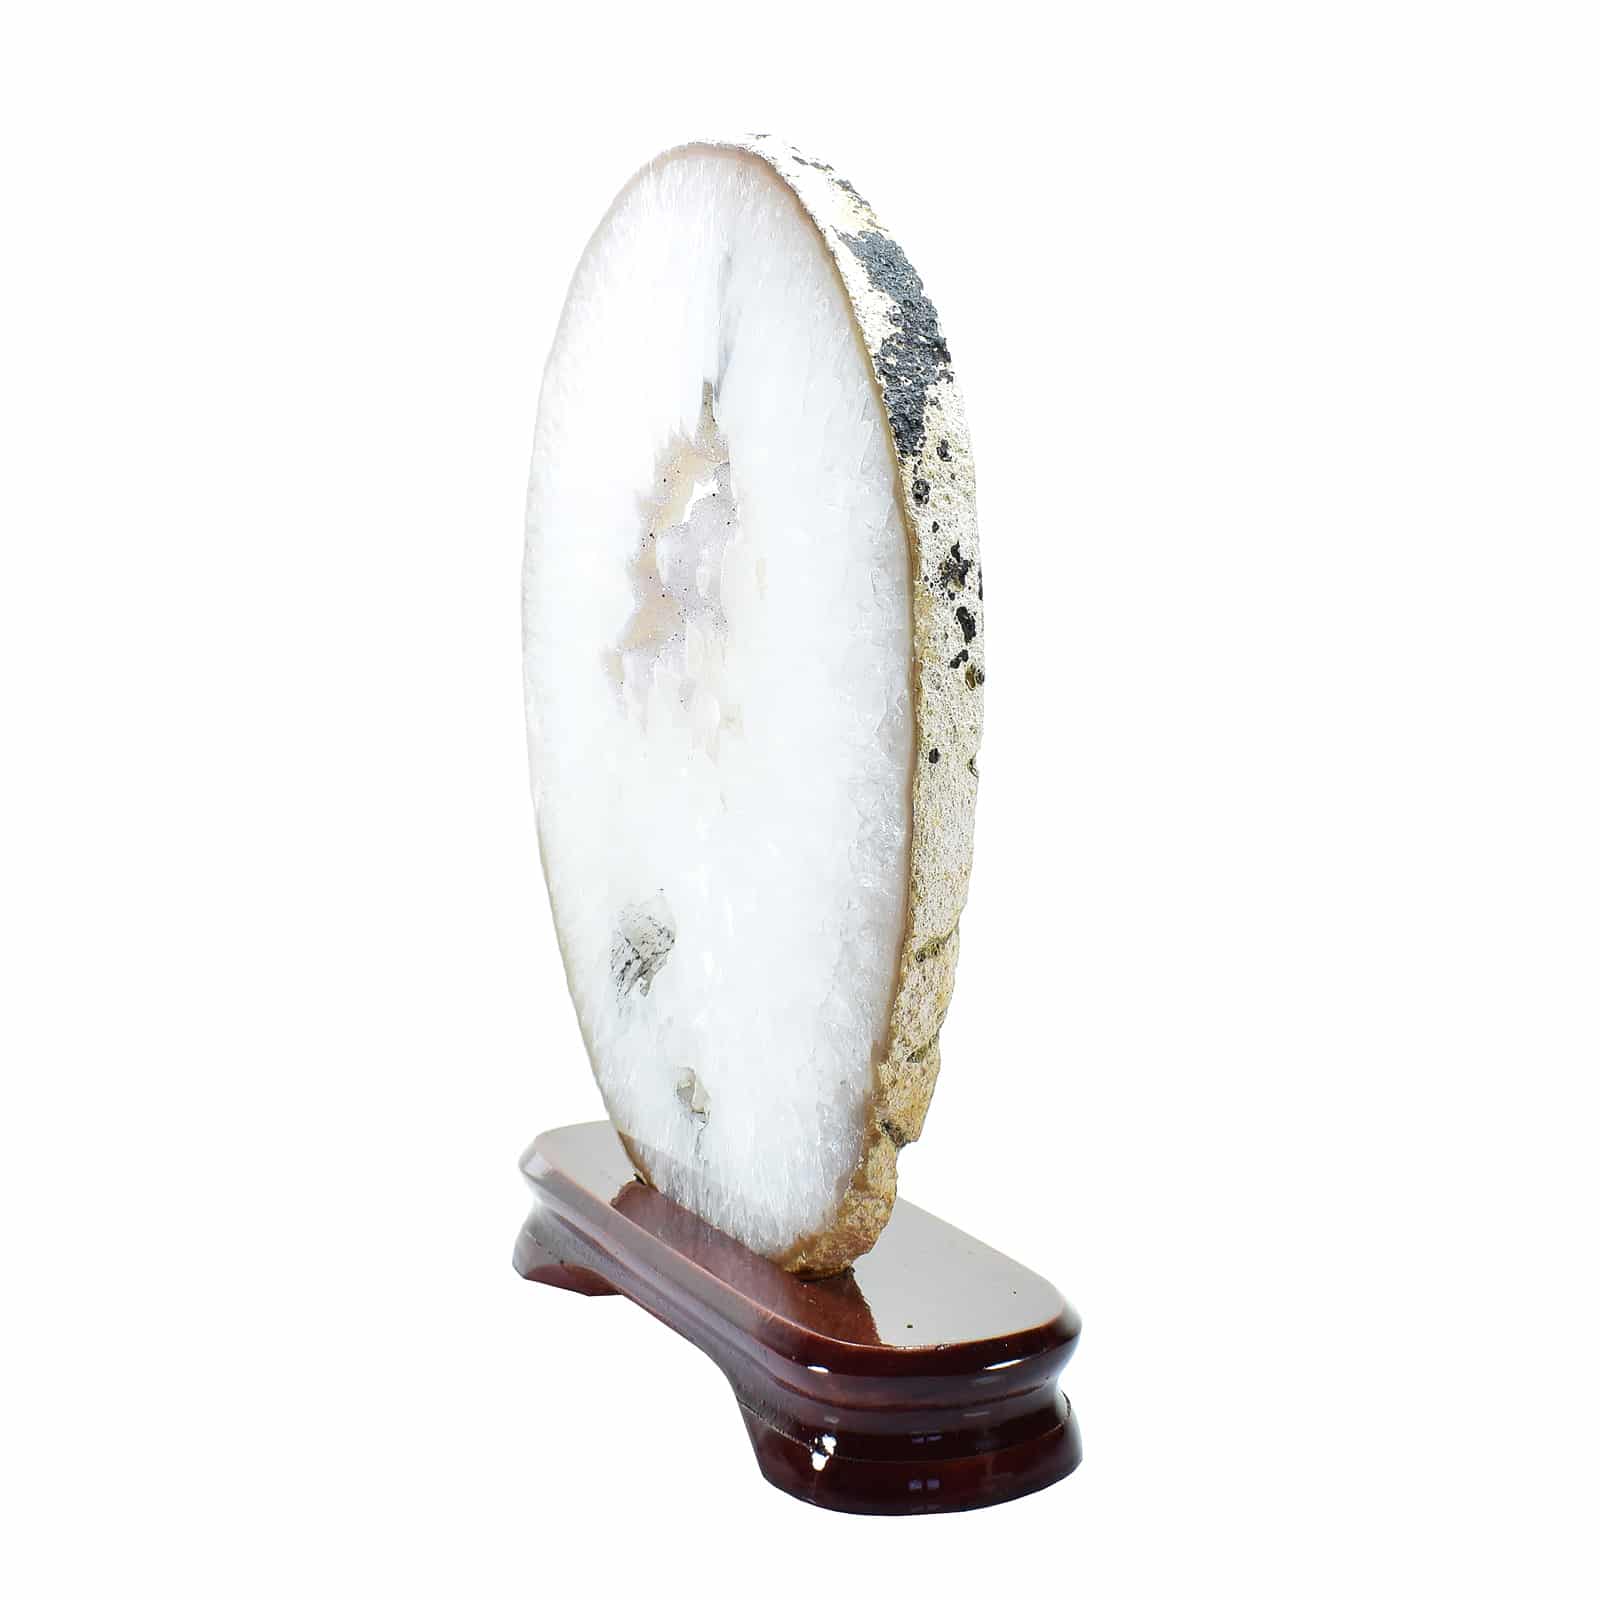 Φέτα Αχάτη με κρύσταλλα χαλαζία, τοποθετημένη σε ξύλινη βάση. Ο Αχάτης είναι γυαλισμένος και από τις δύο πλευρές και έχει ύψος 22,5cm. Αγοράστε online shop.